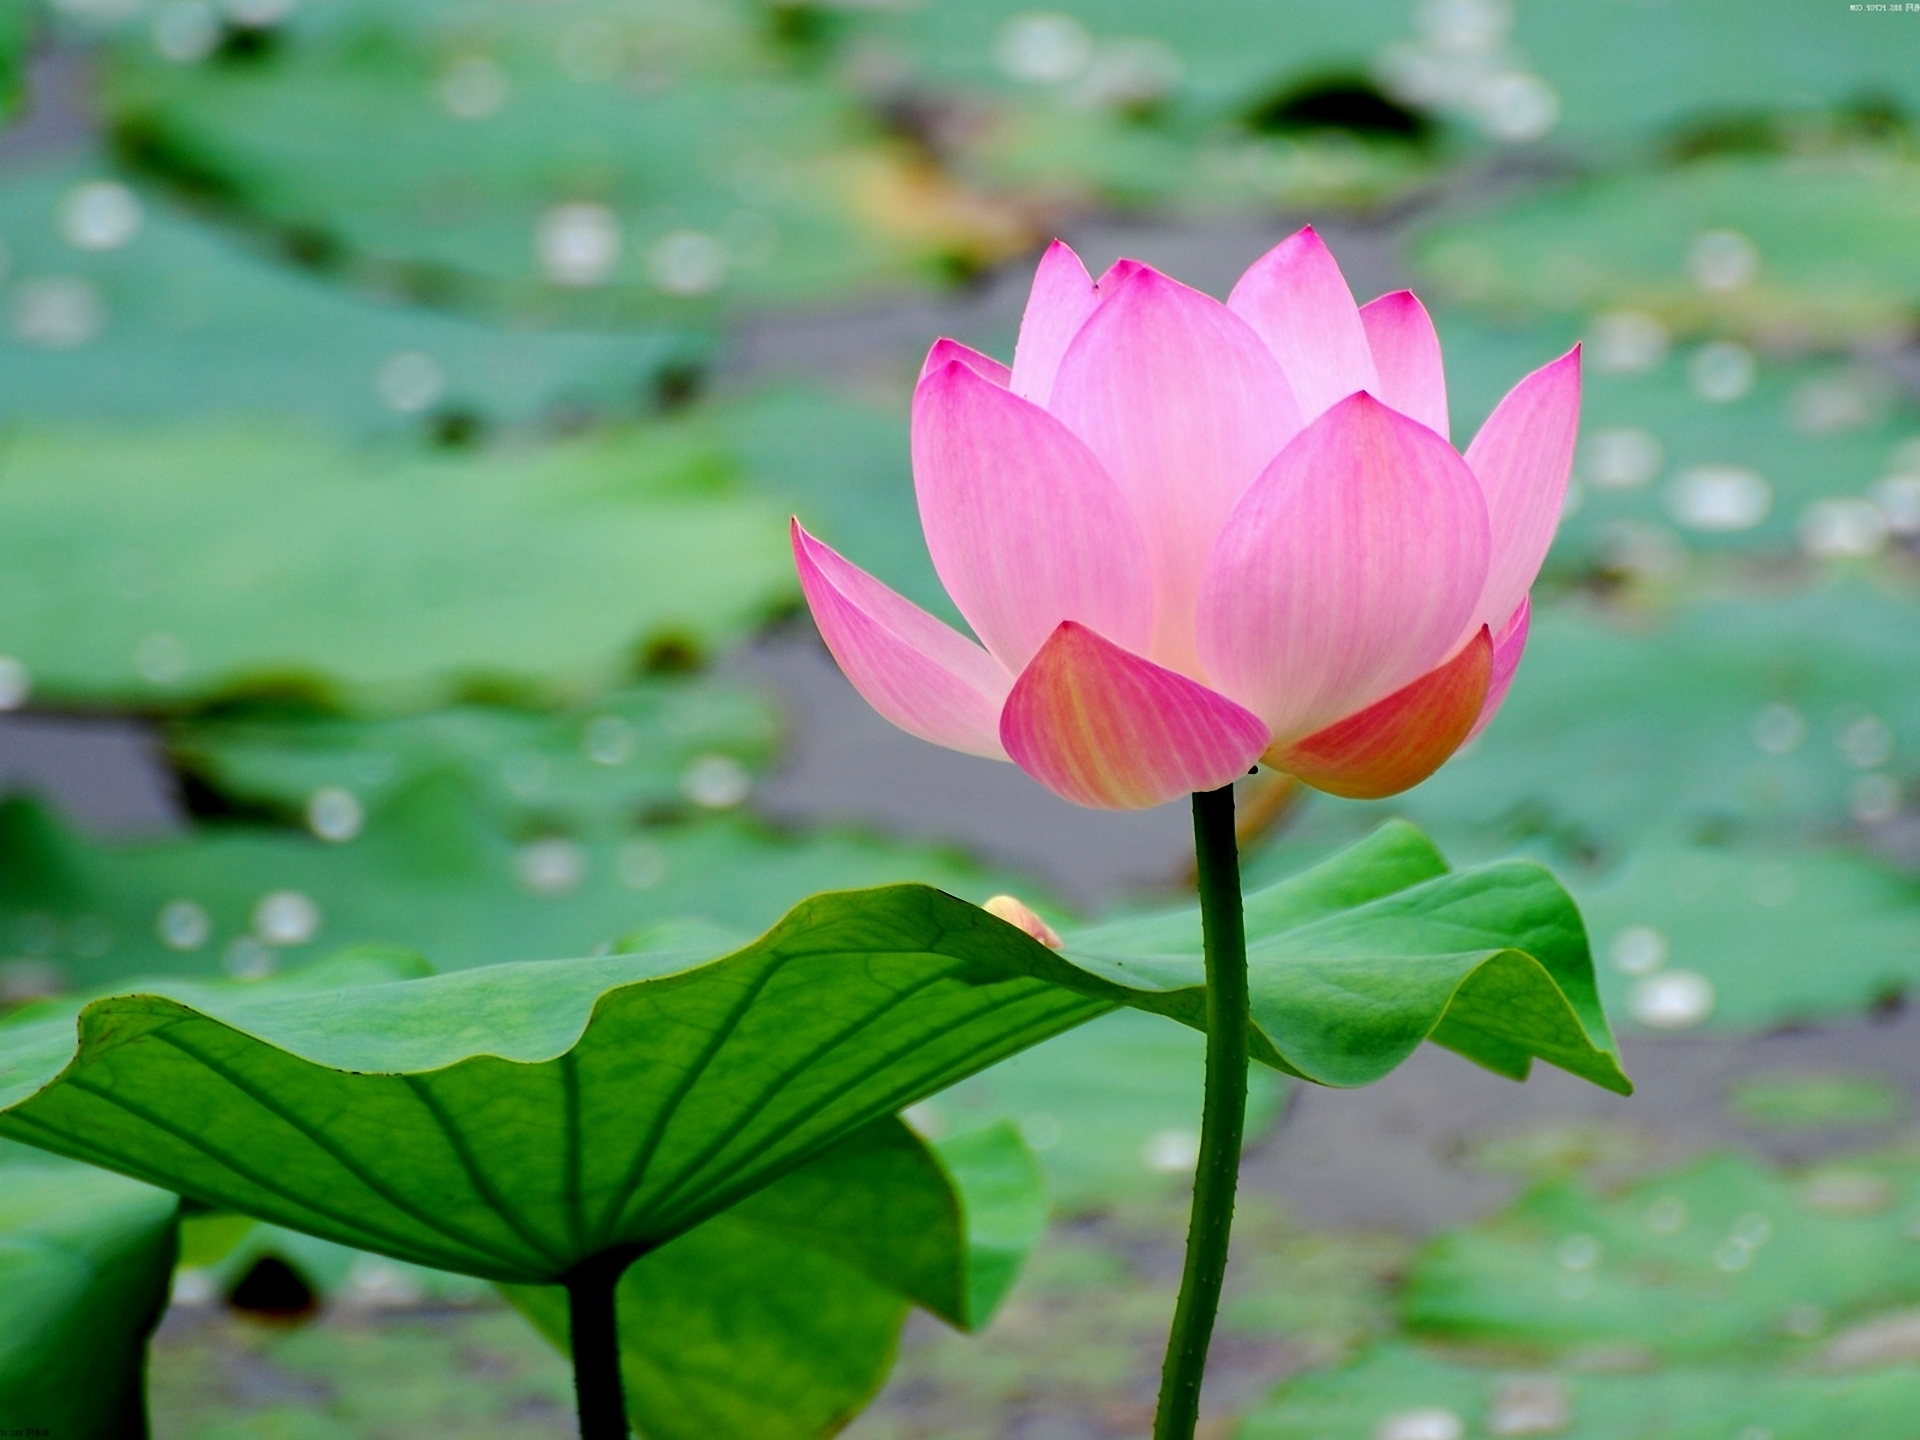 Lotus flower in natural surroundings.